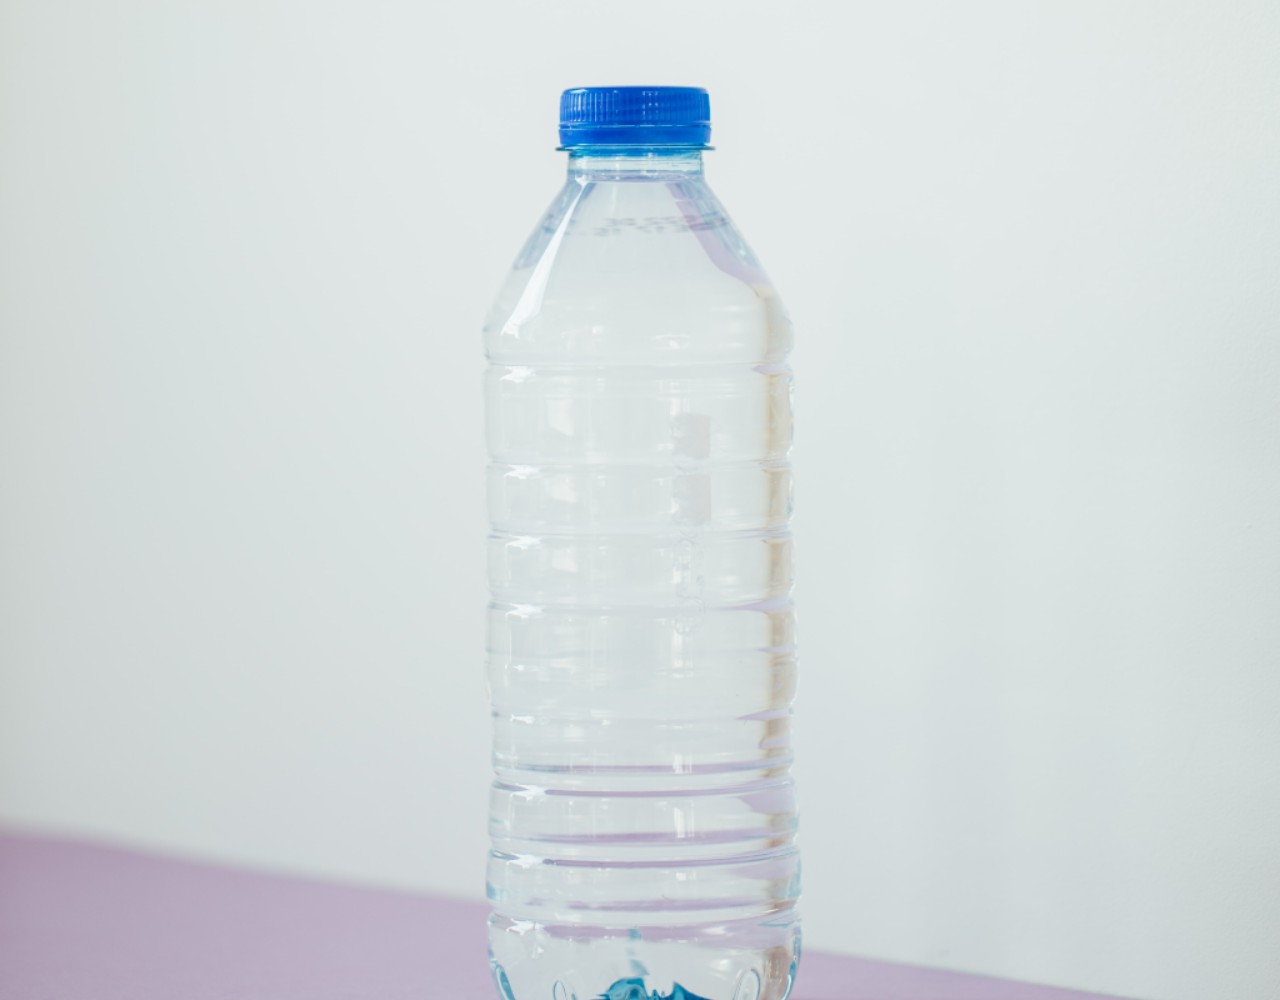 Περιβαλλοντικό τέλος και για τα πλαστικά μπουκάλια